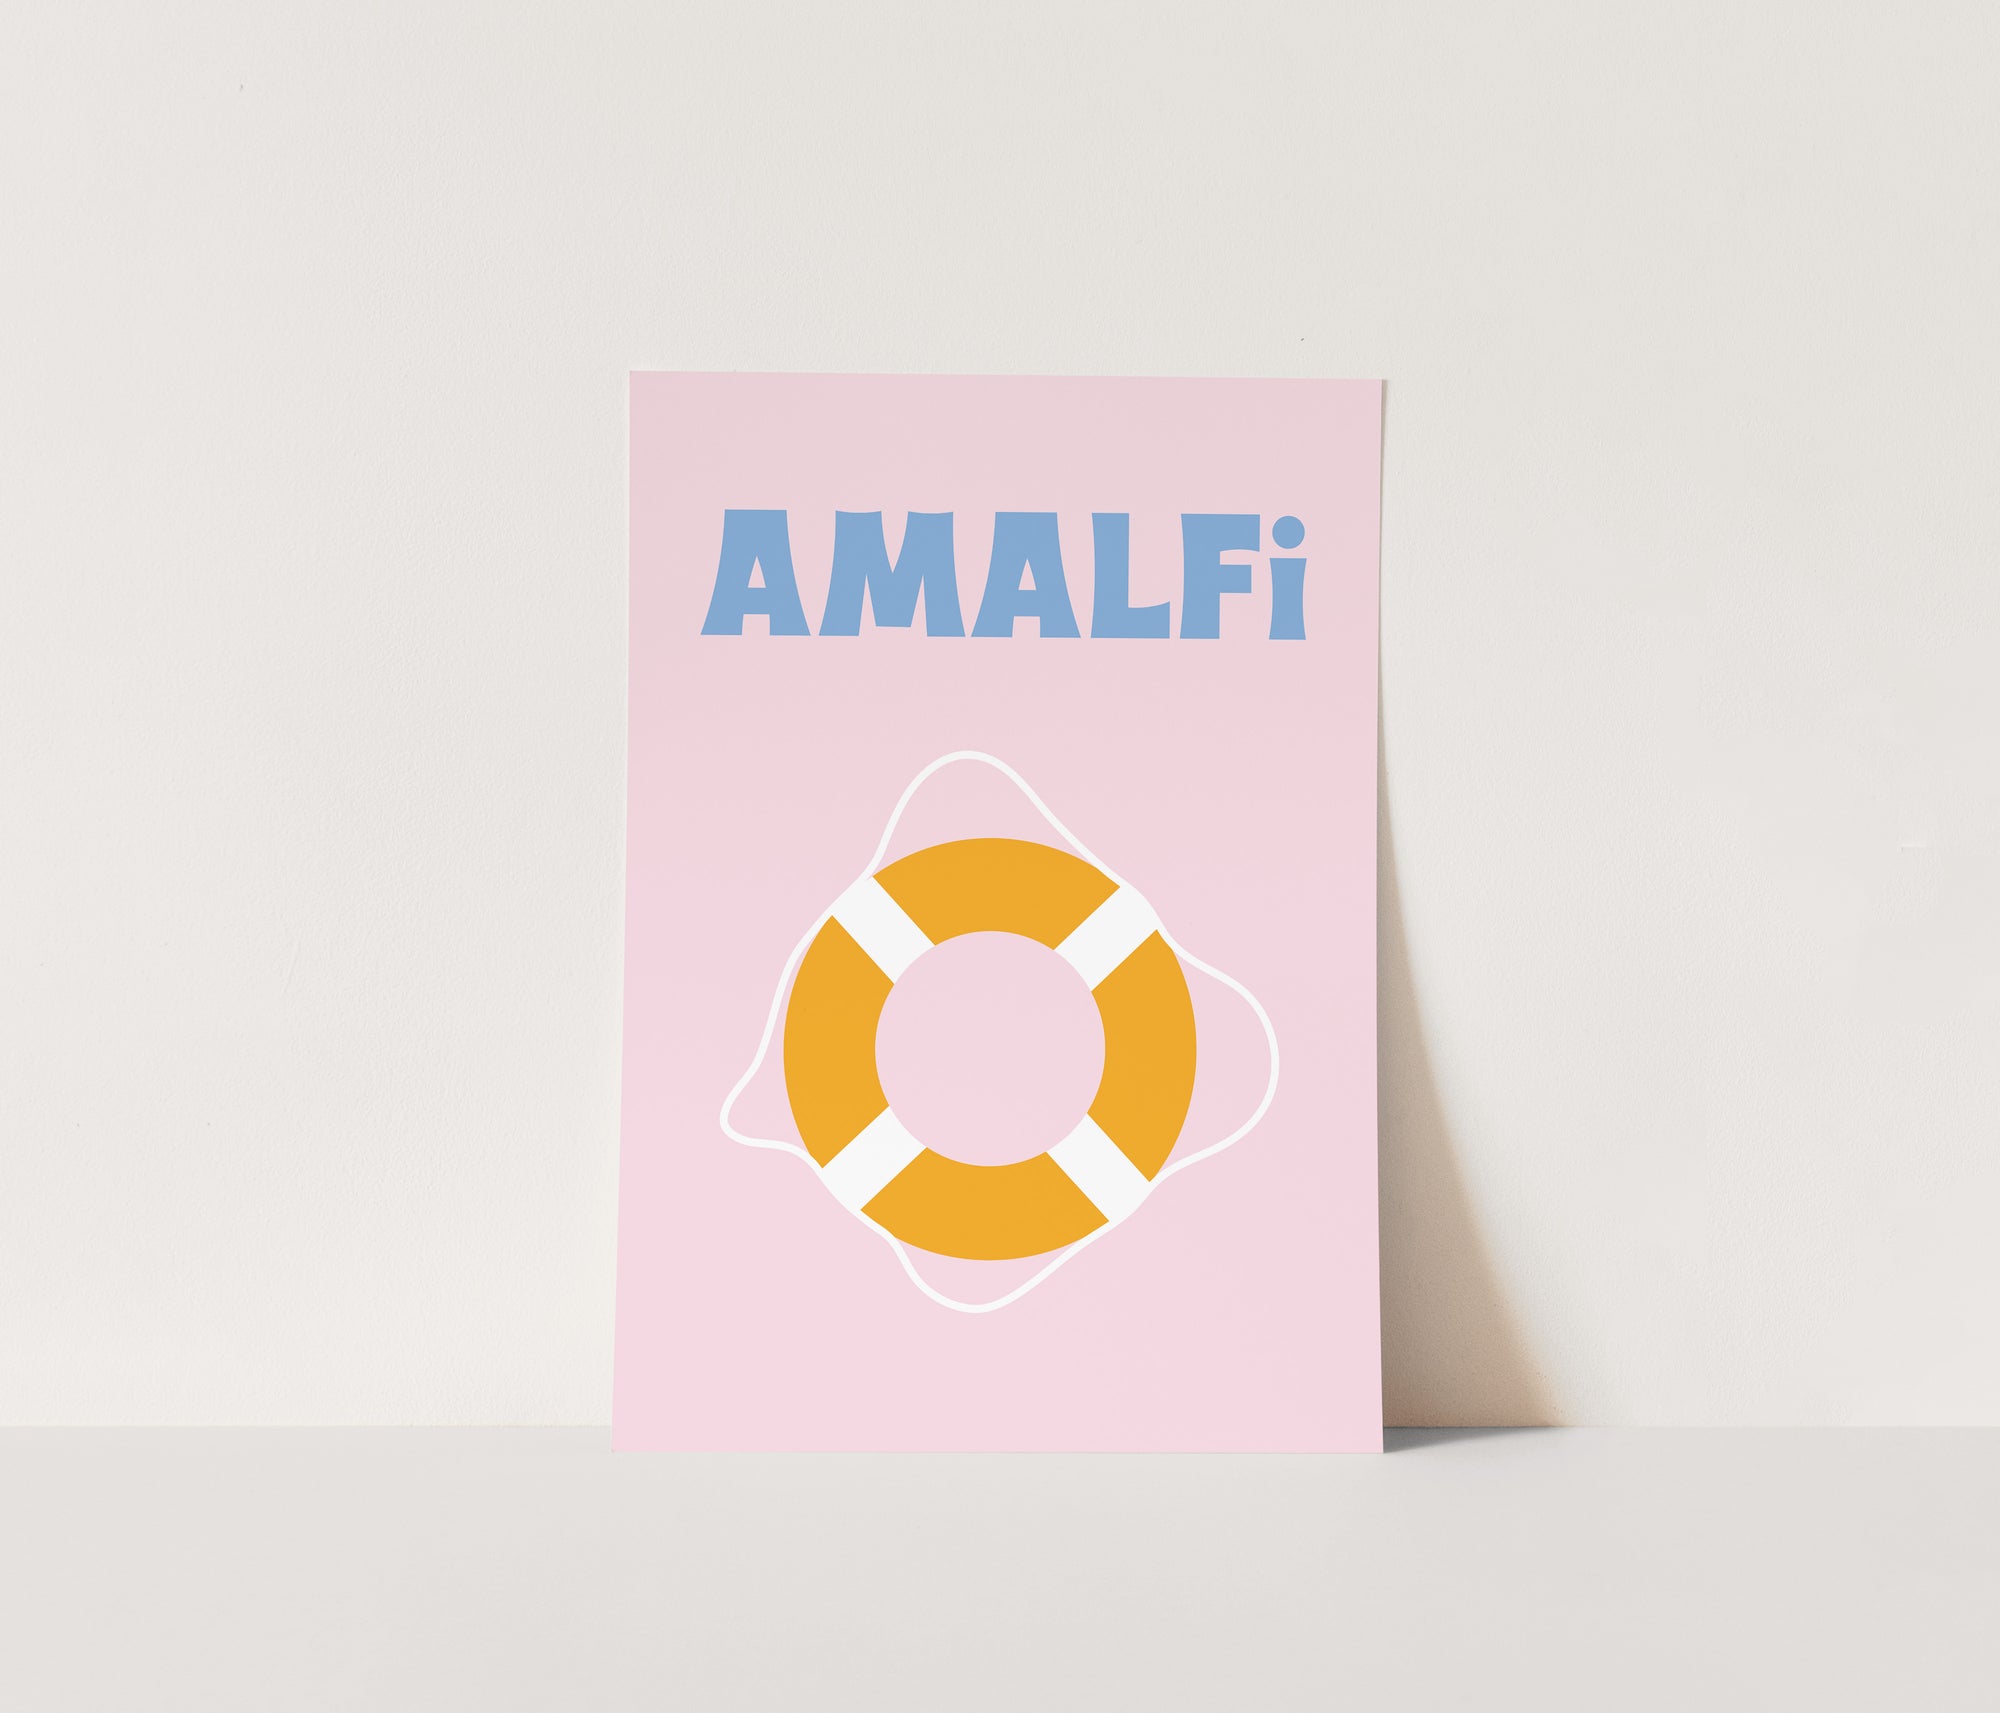 Amalfi Print in Pink